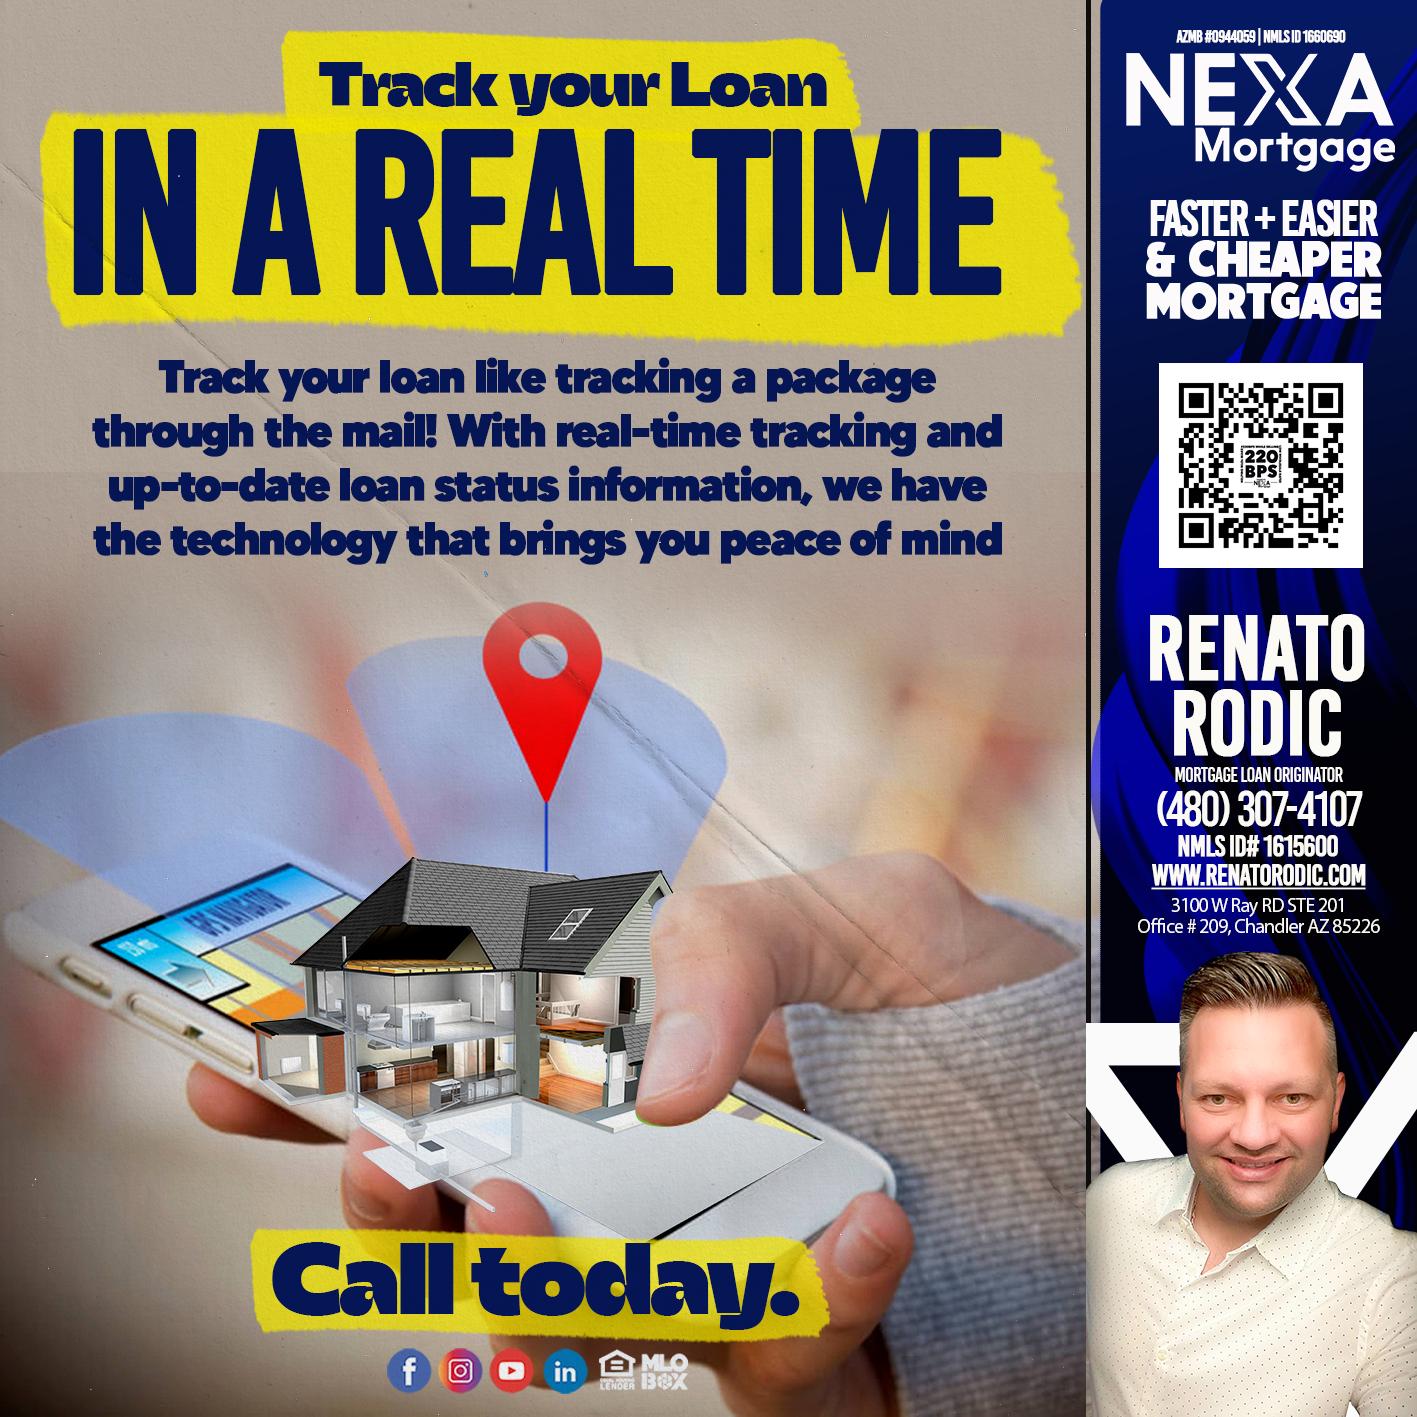 IN A REAL TIME - Renato Rodic -Mortgage Loan Originator